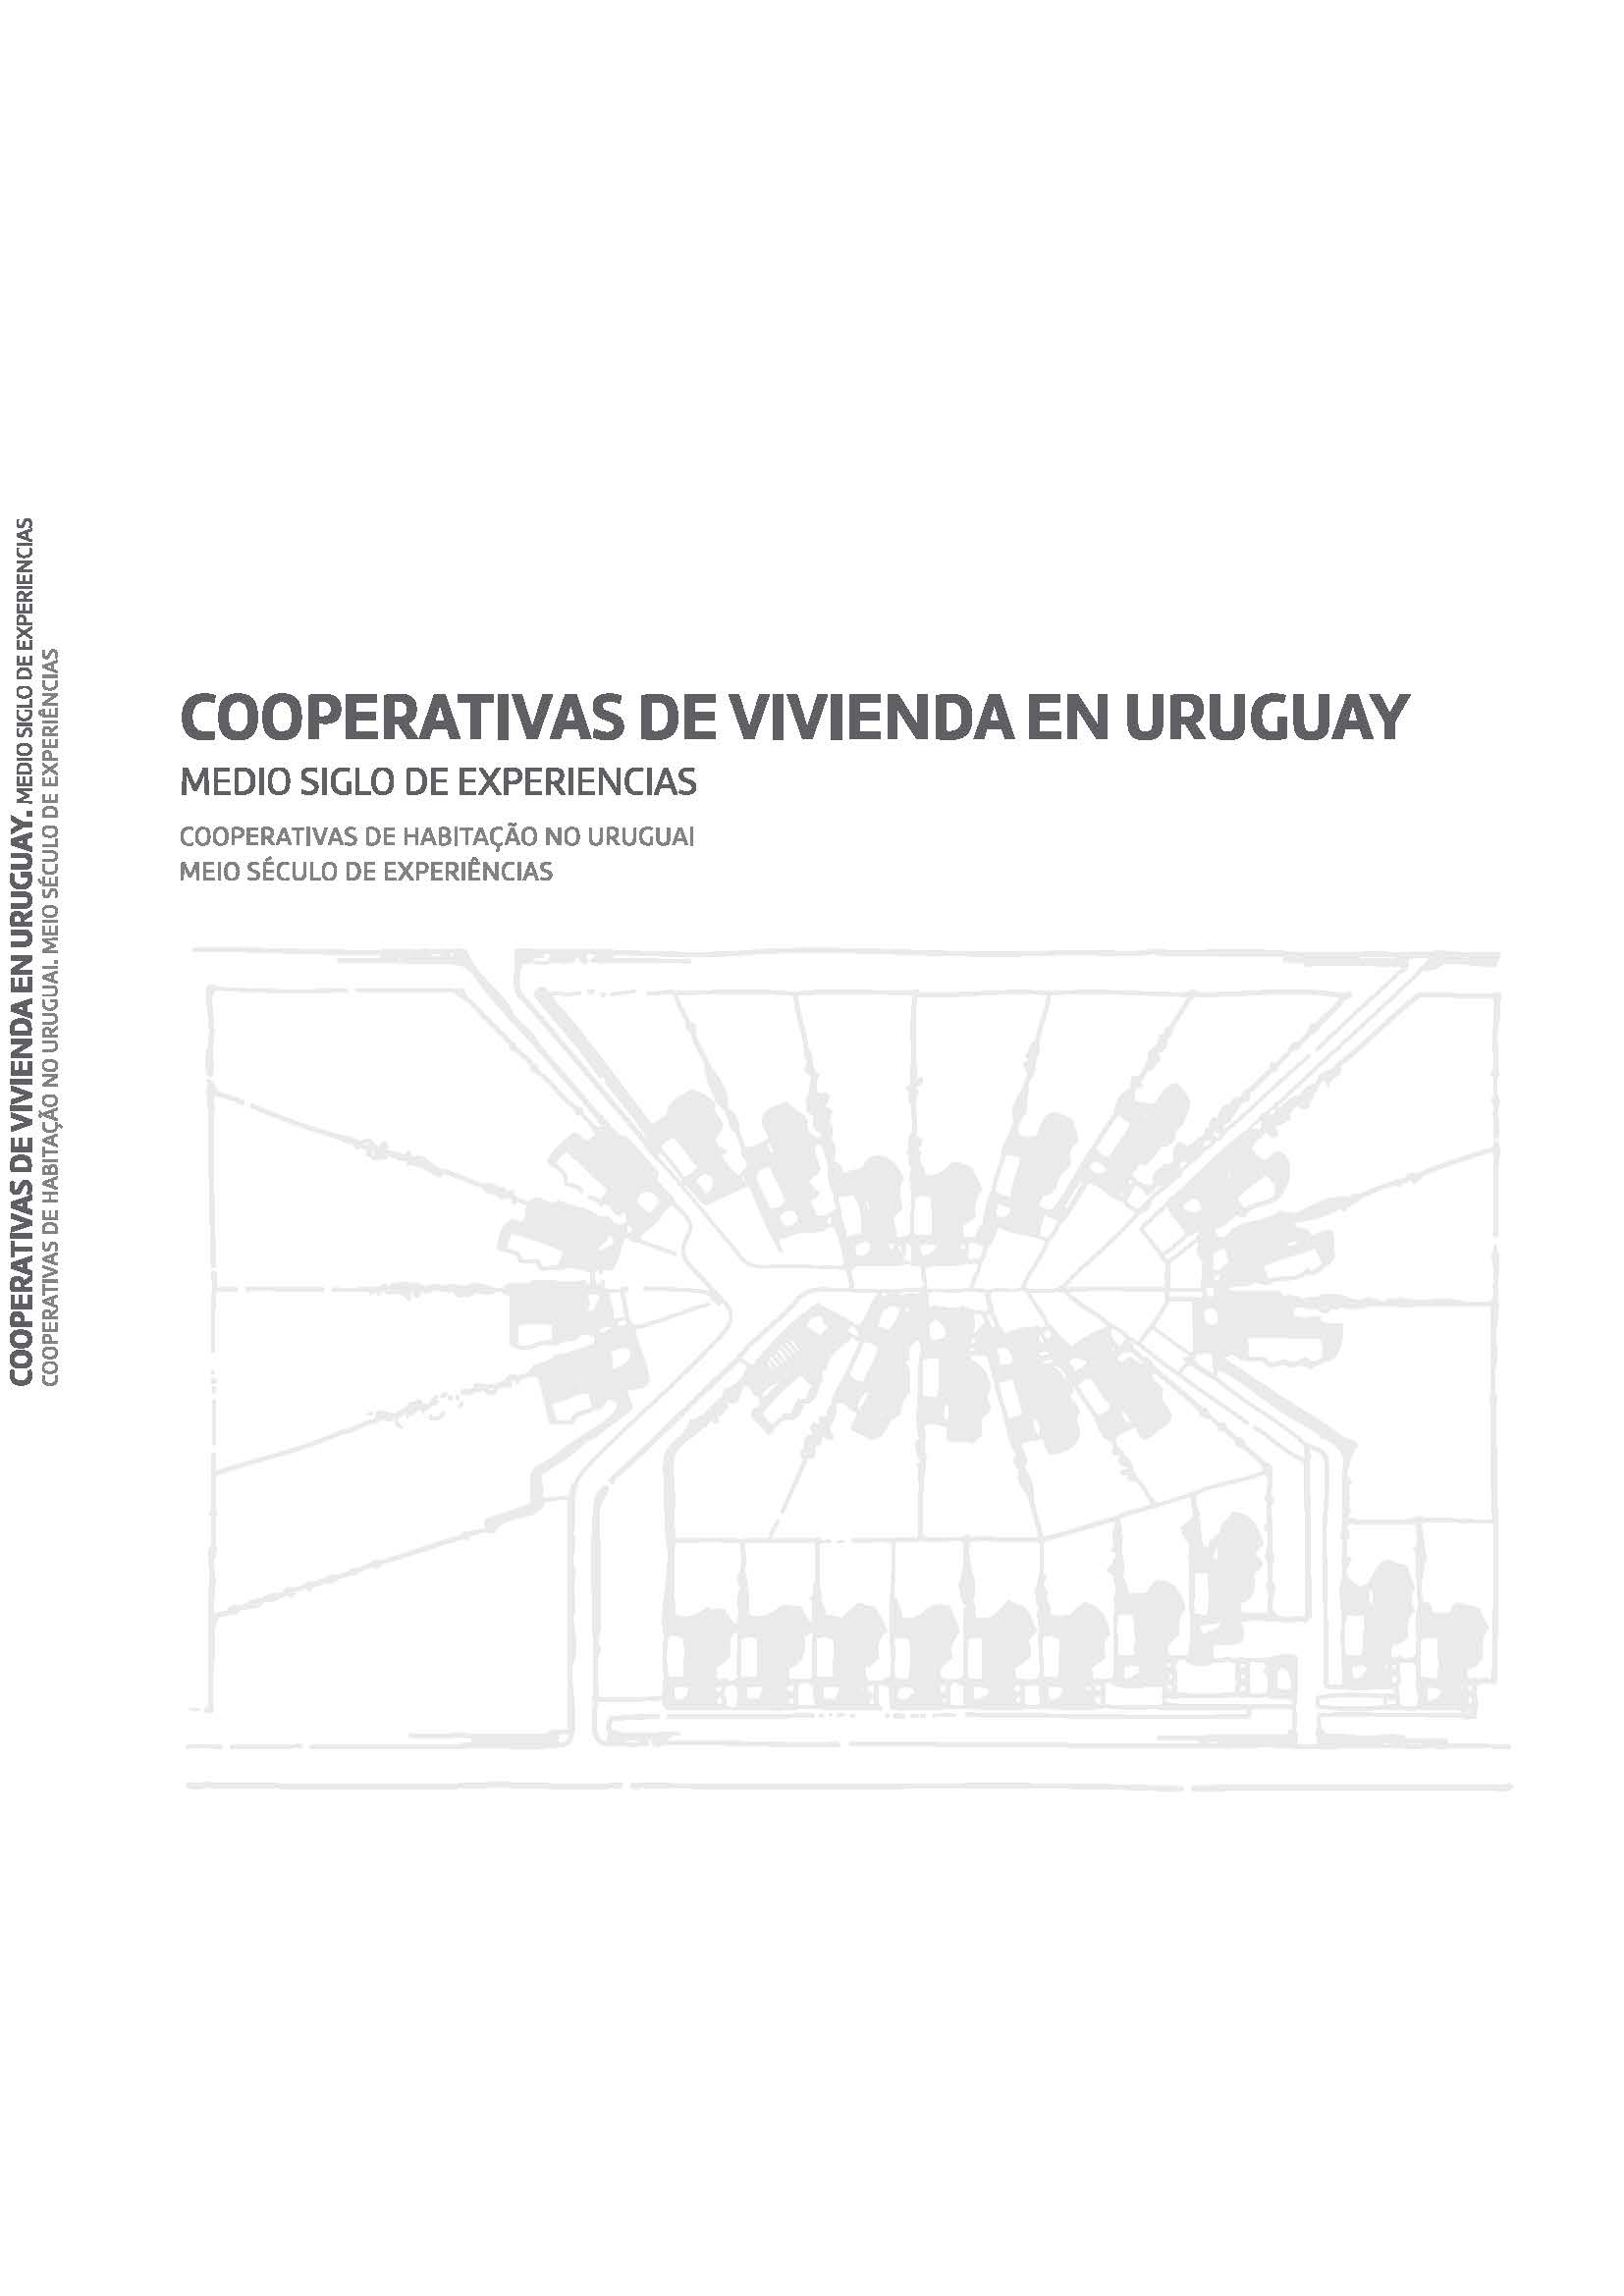 Cooperativas de vivienda en Uruguay